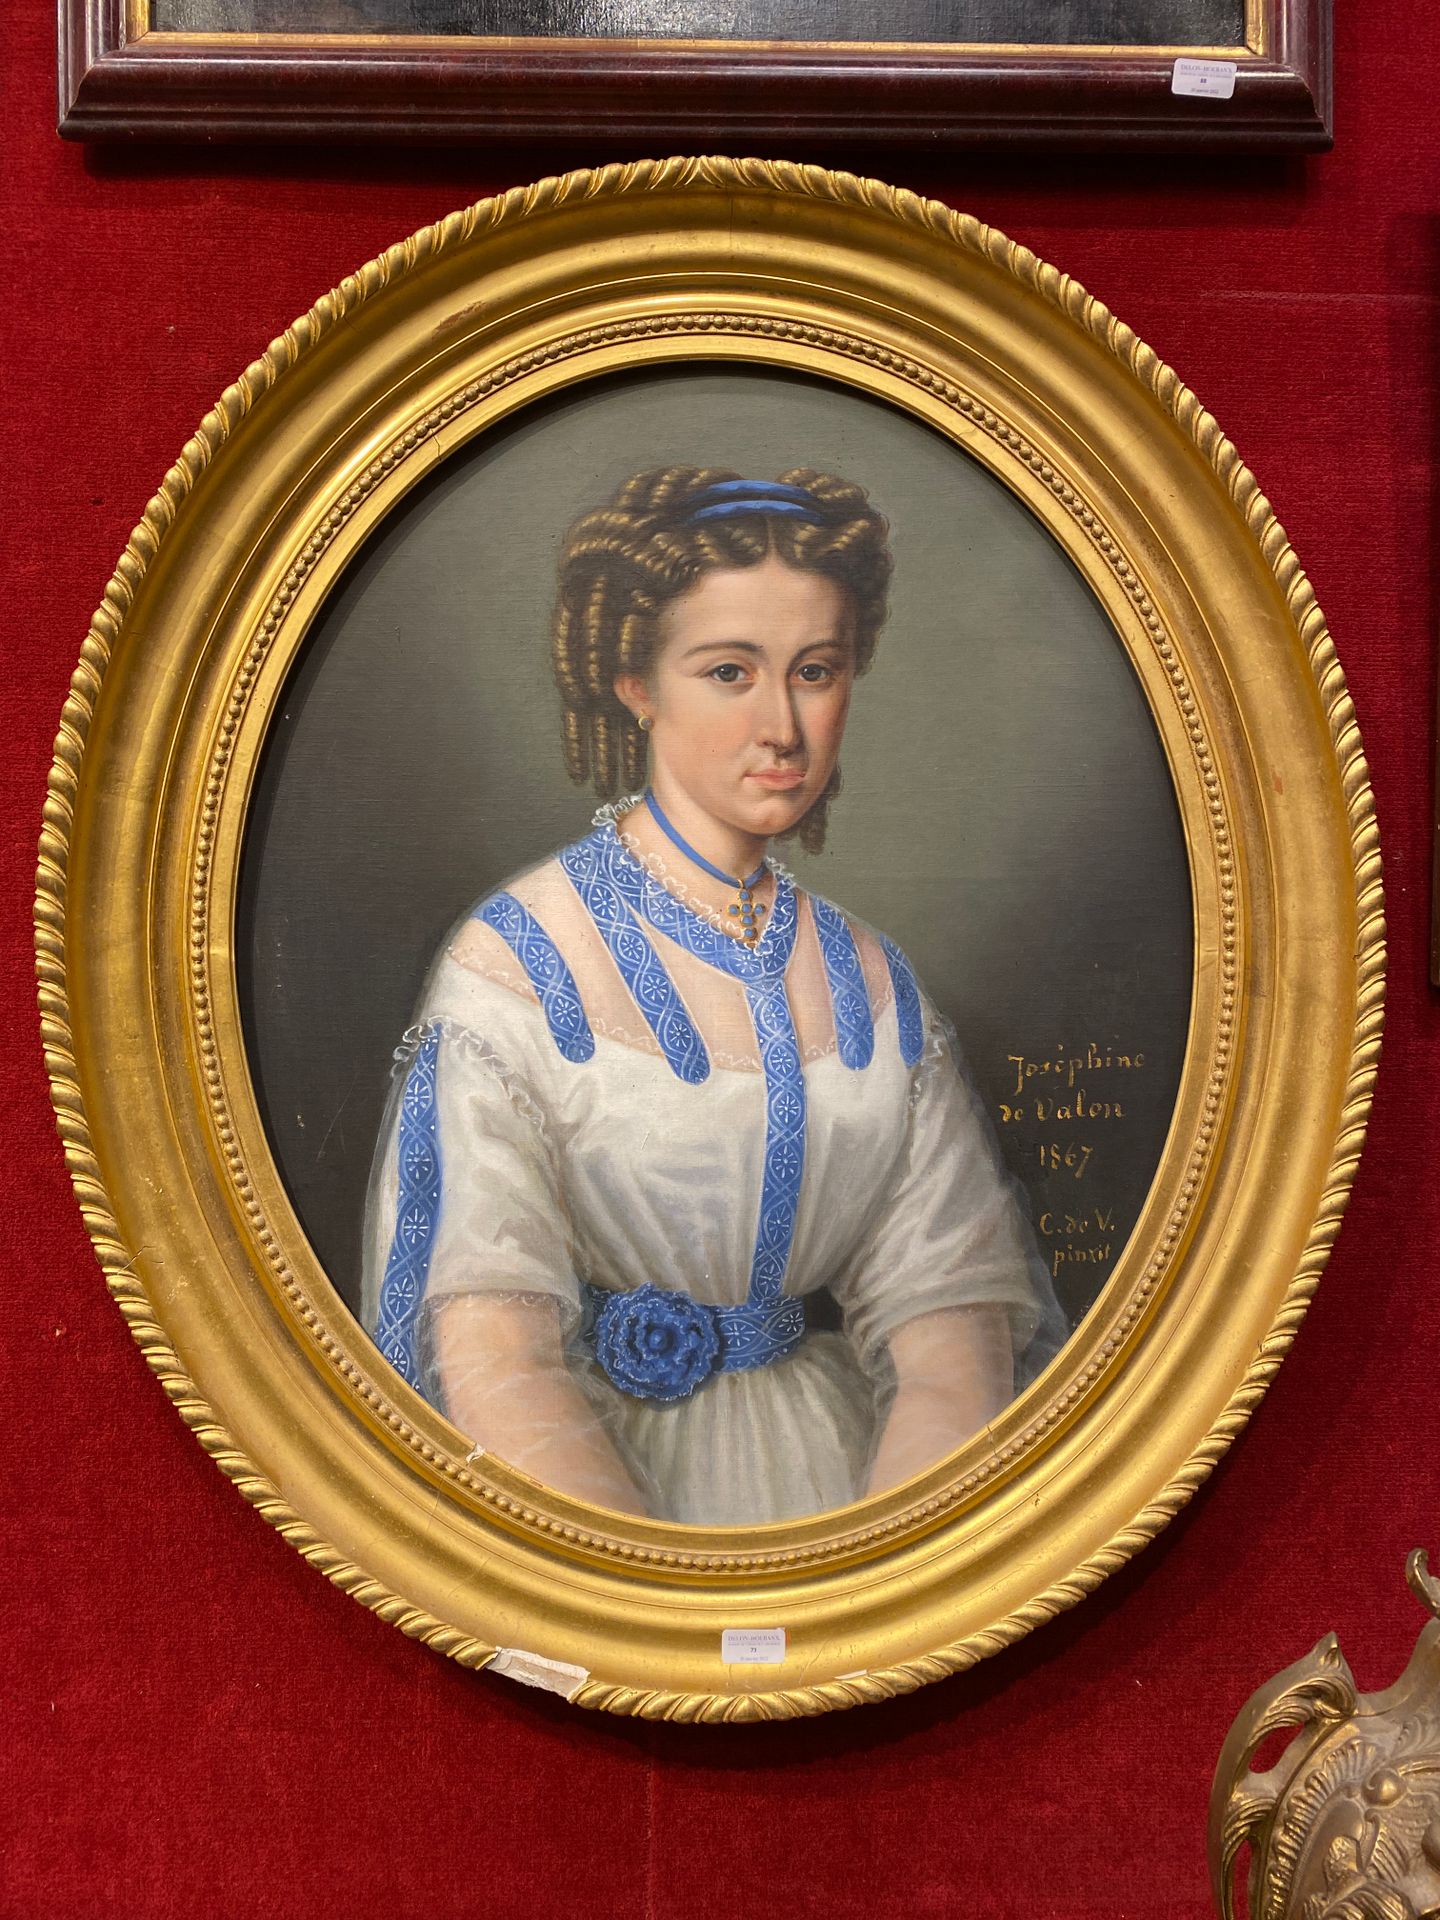 Null FRANZÖSISCHE Schule 1867

Porträt von Joséphine de Valon.

Ovales Gemälde, &hellip;